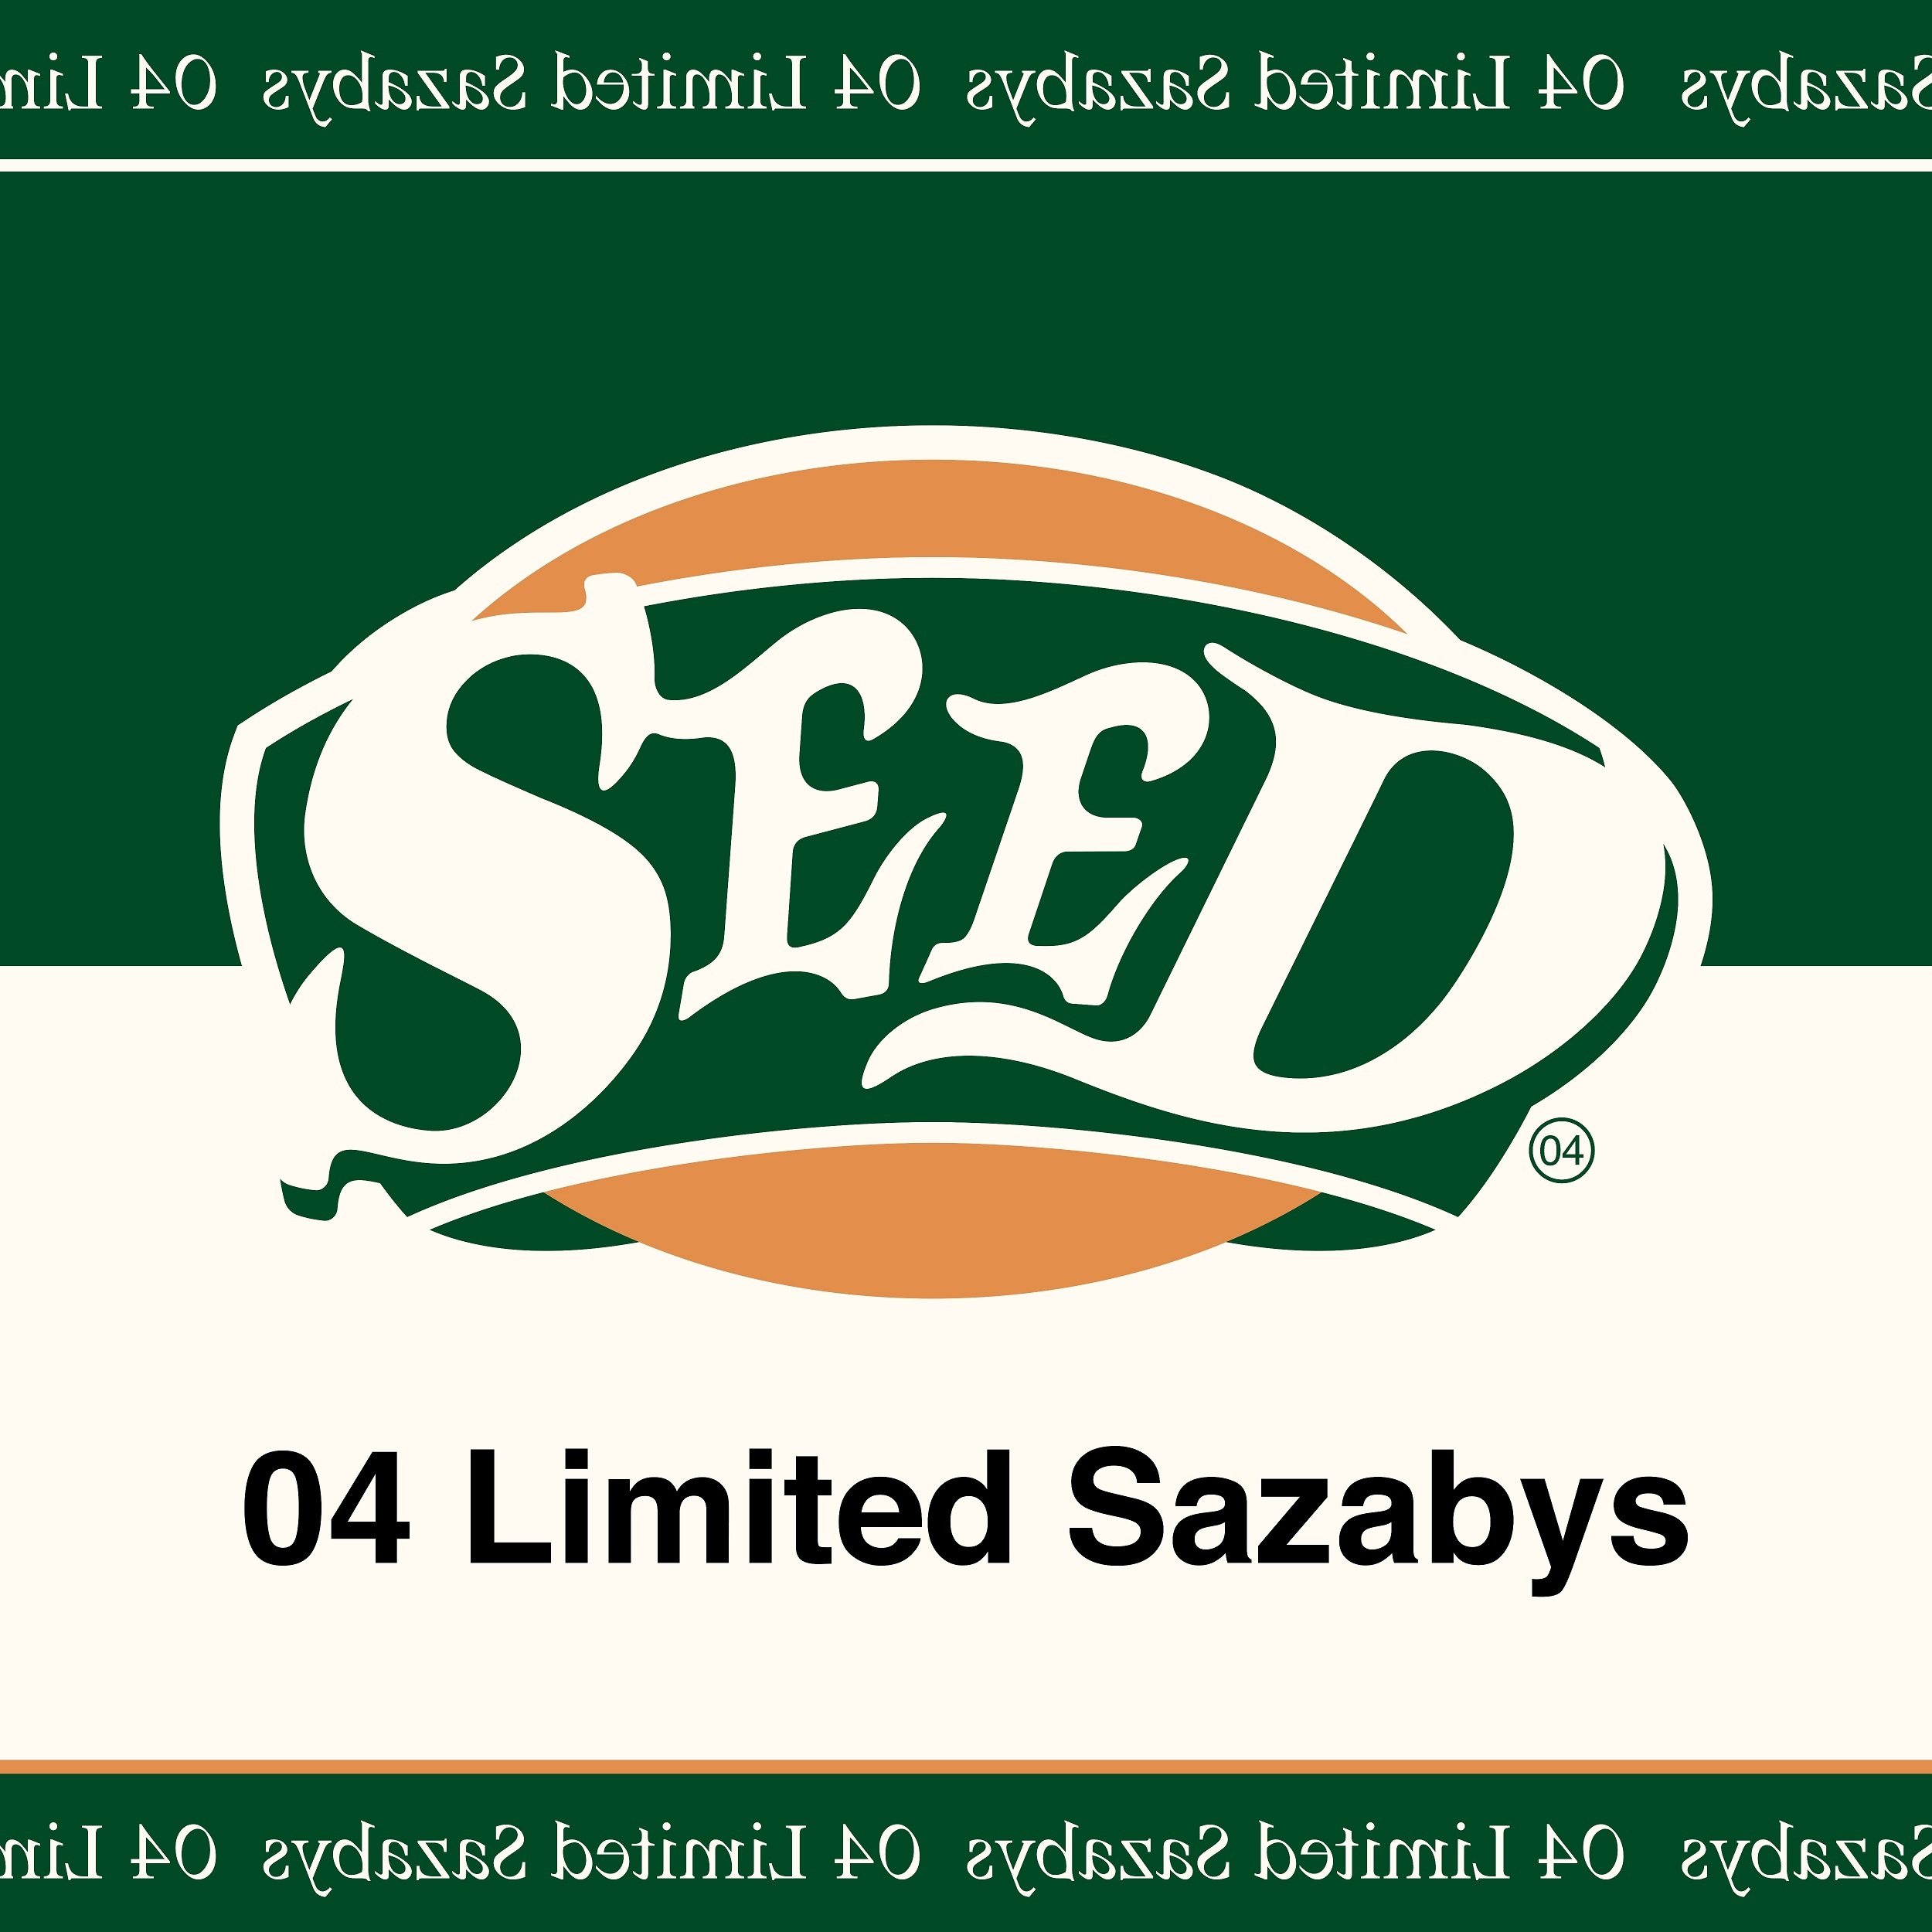 04 Limited Sazabys 9月4日にニューシングル Seed 発売決定 今までにない特殊形態でのリリースを予告 Spice エンタメ特化型情報メディア スパイス